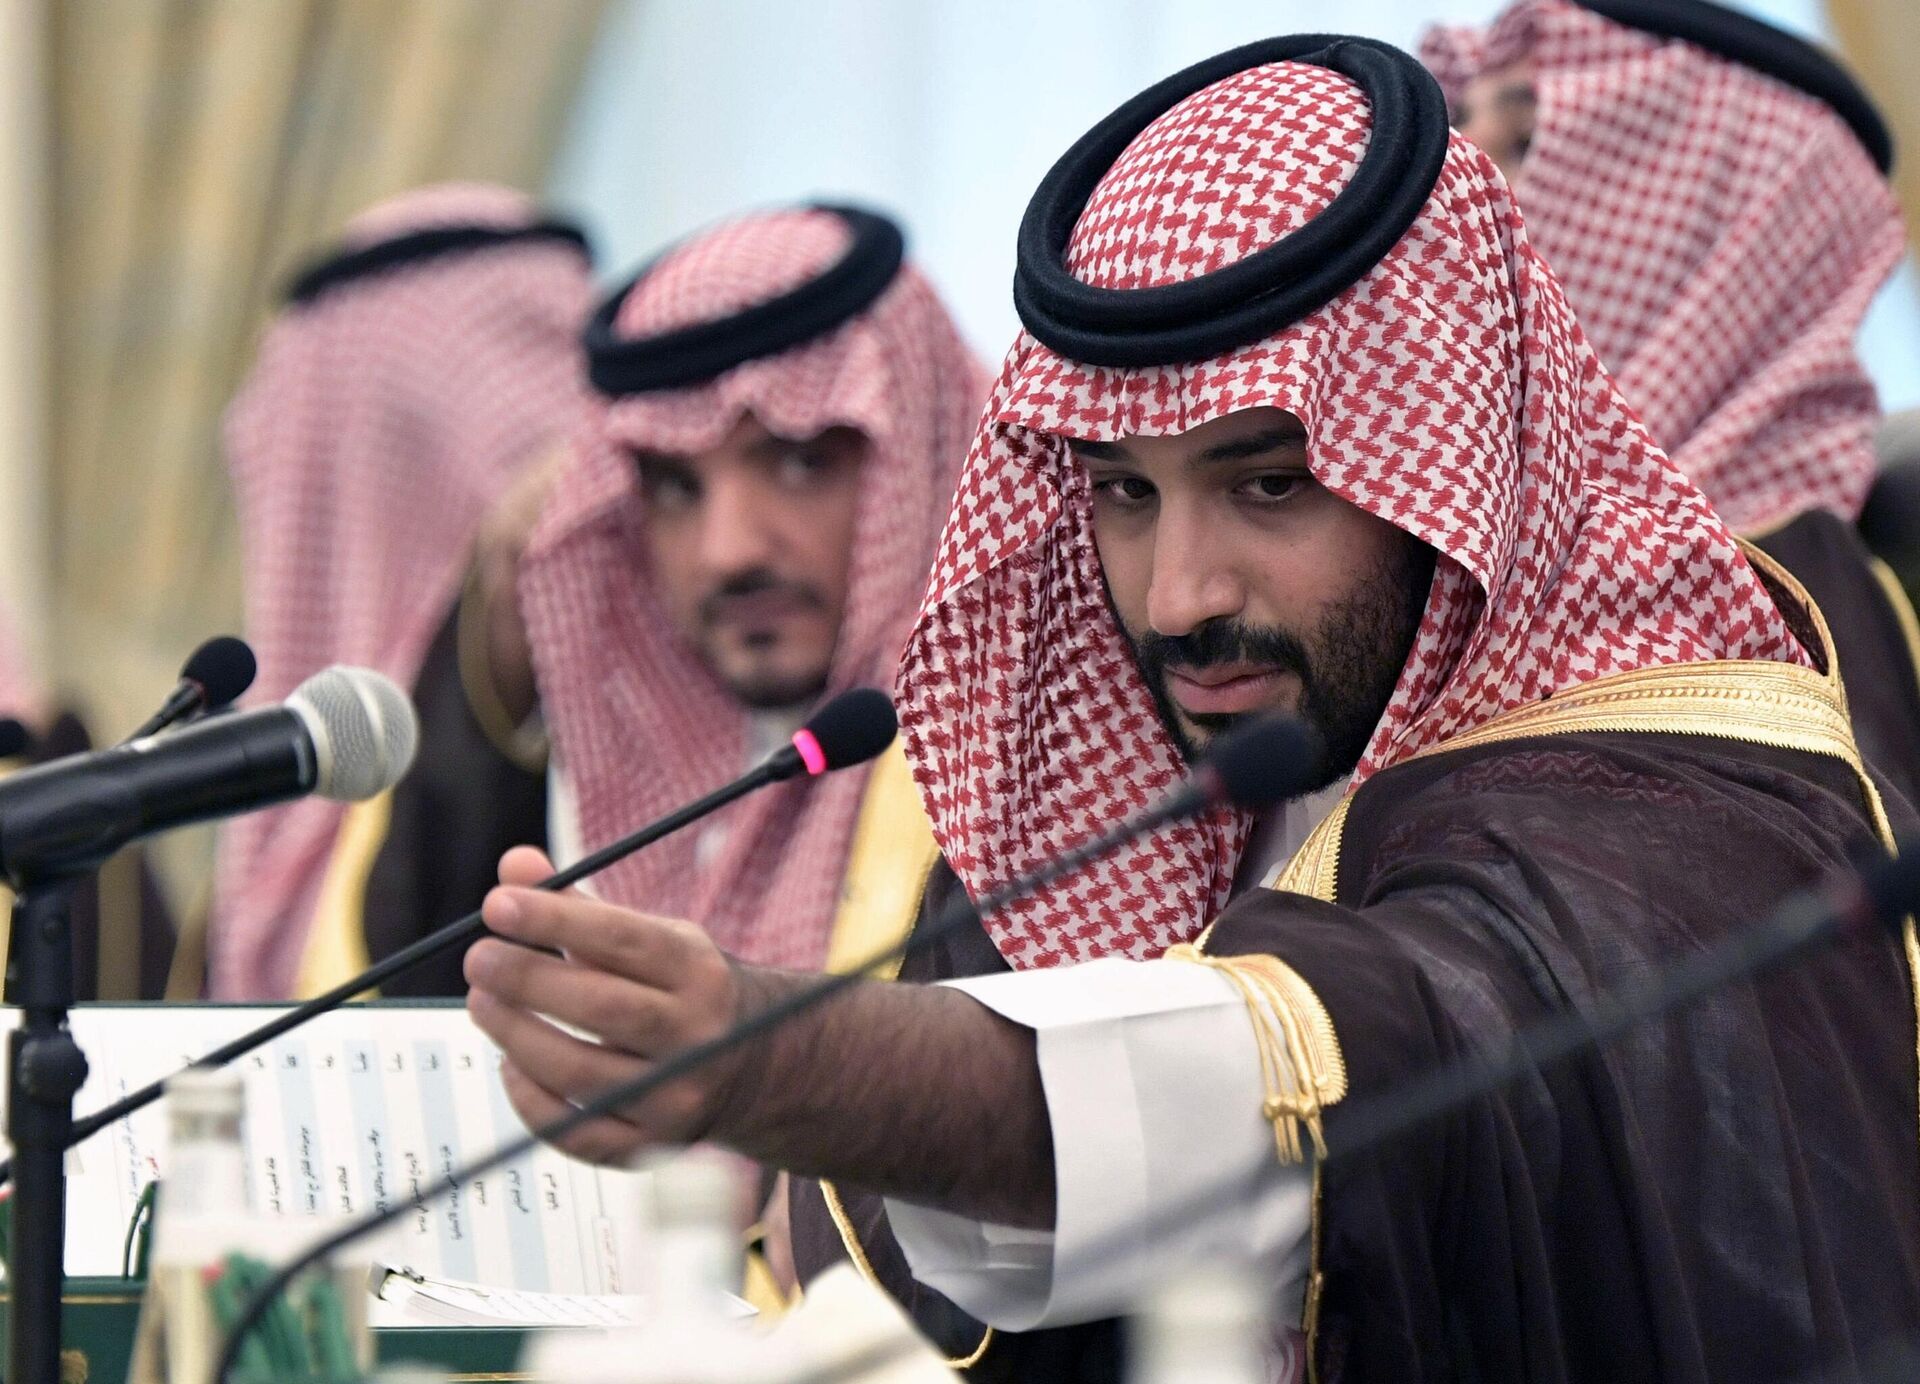 Саудовская аравия развитая